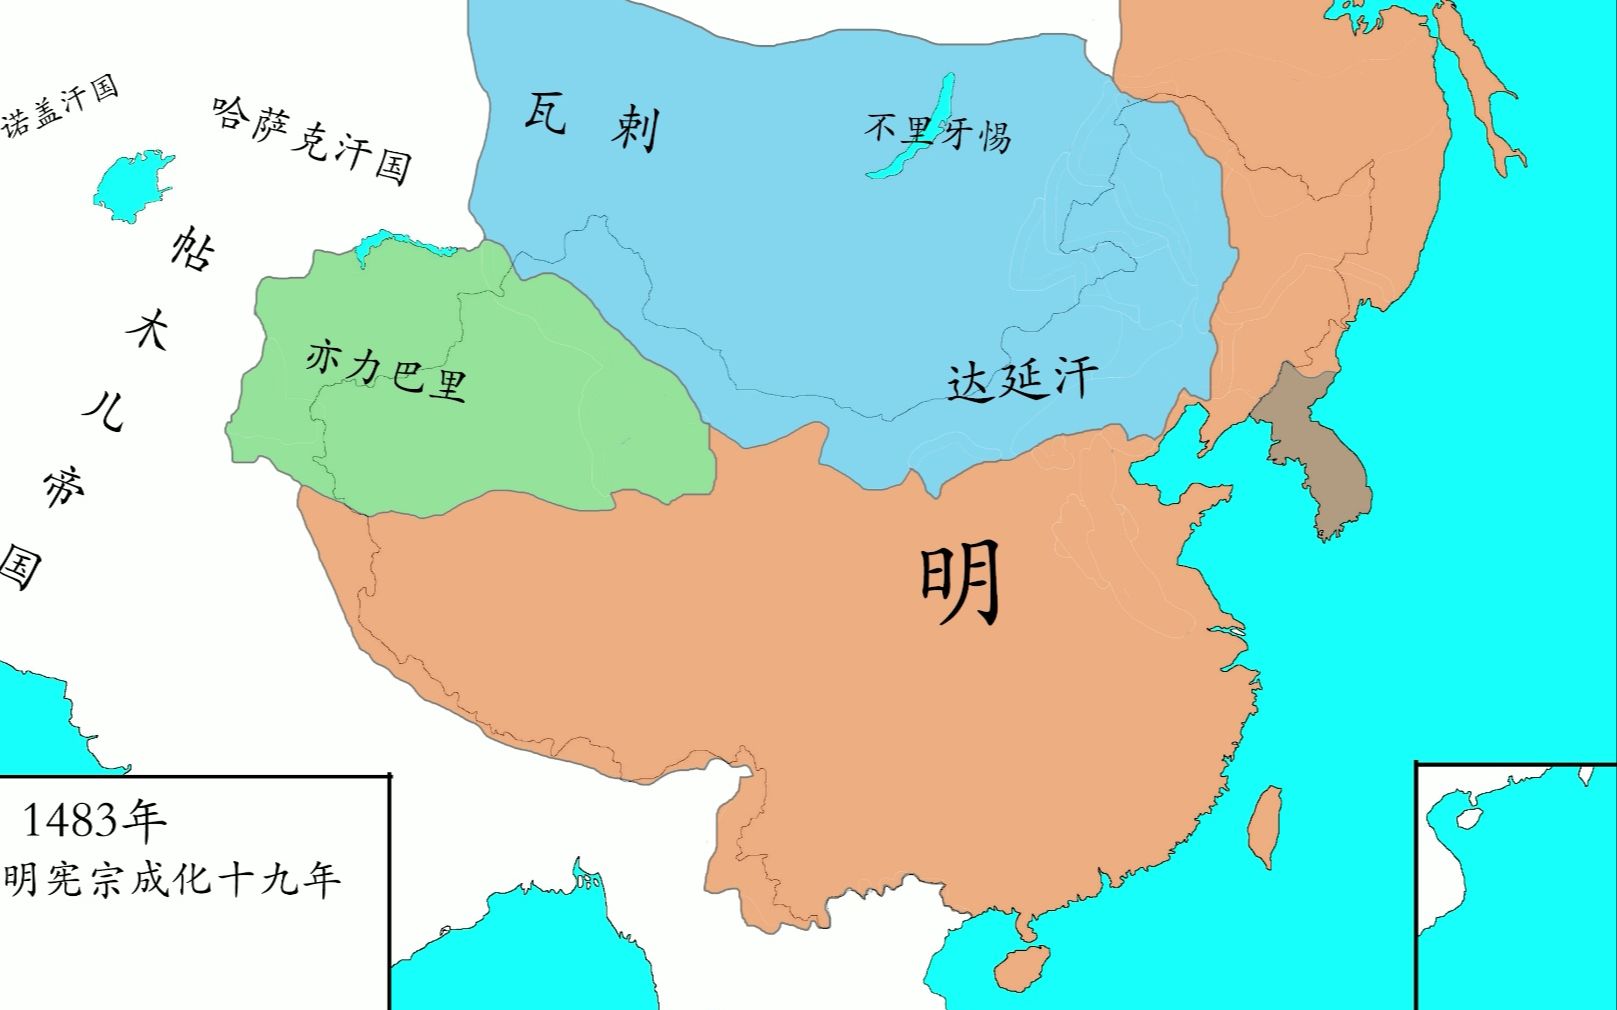 【历史地图】大明帝国三百年